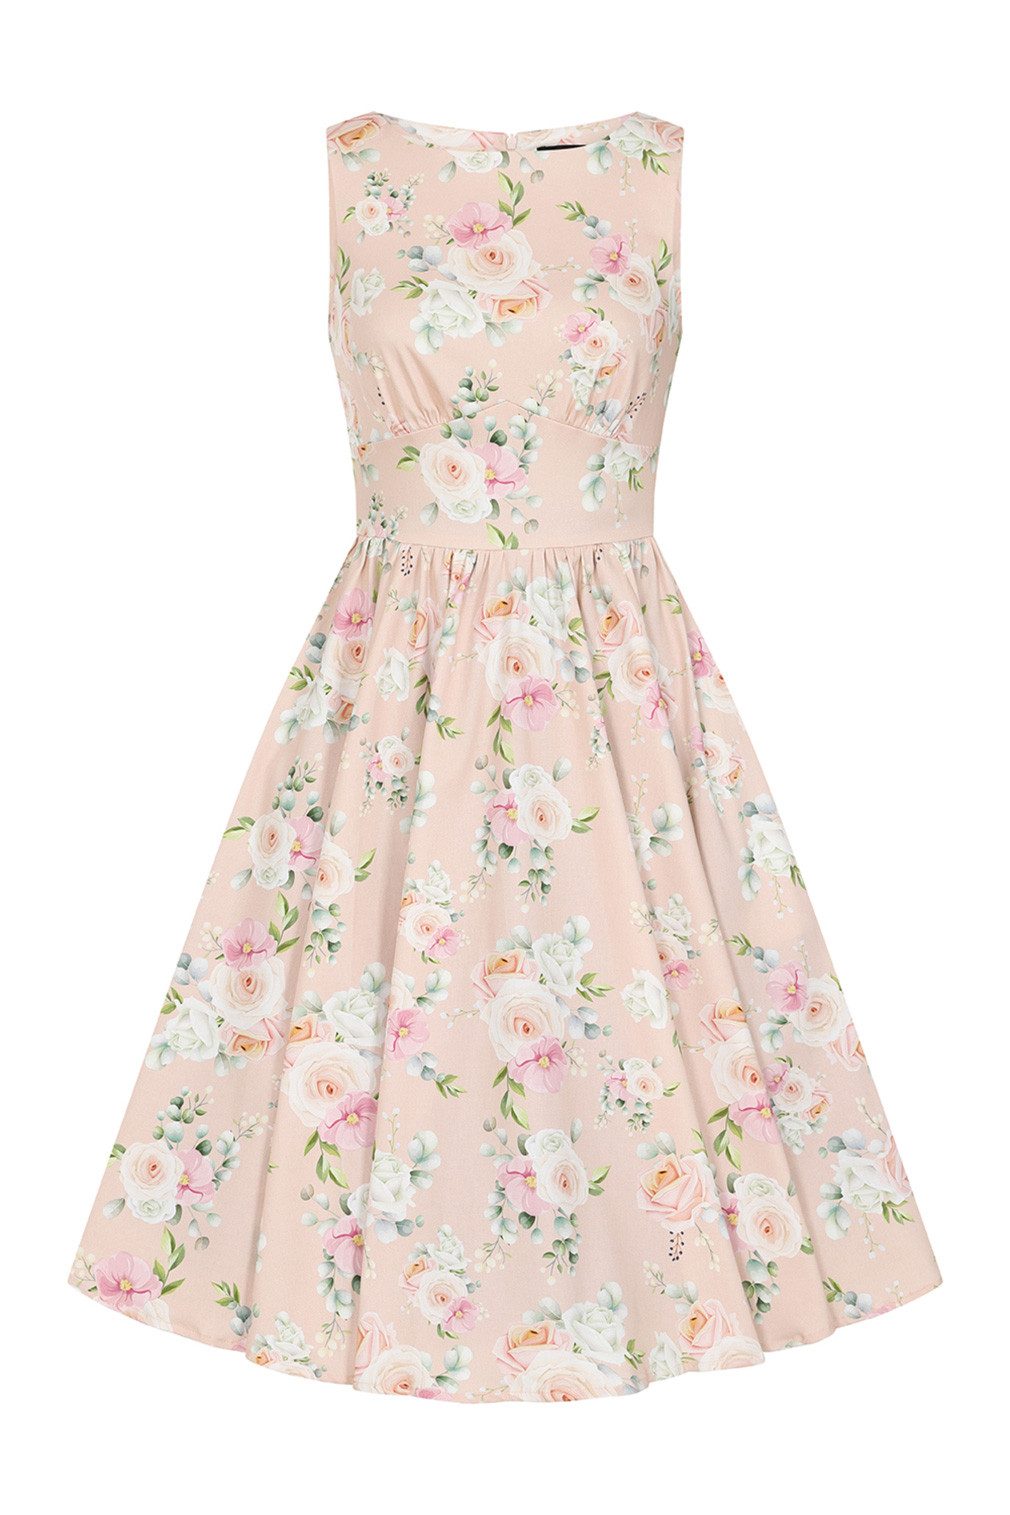 Hearts & Roses London A-Linien-Kleid Amanda Floral Swing Dress Rockabella Vintage Retro